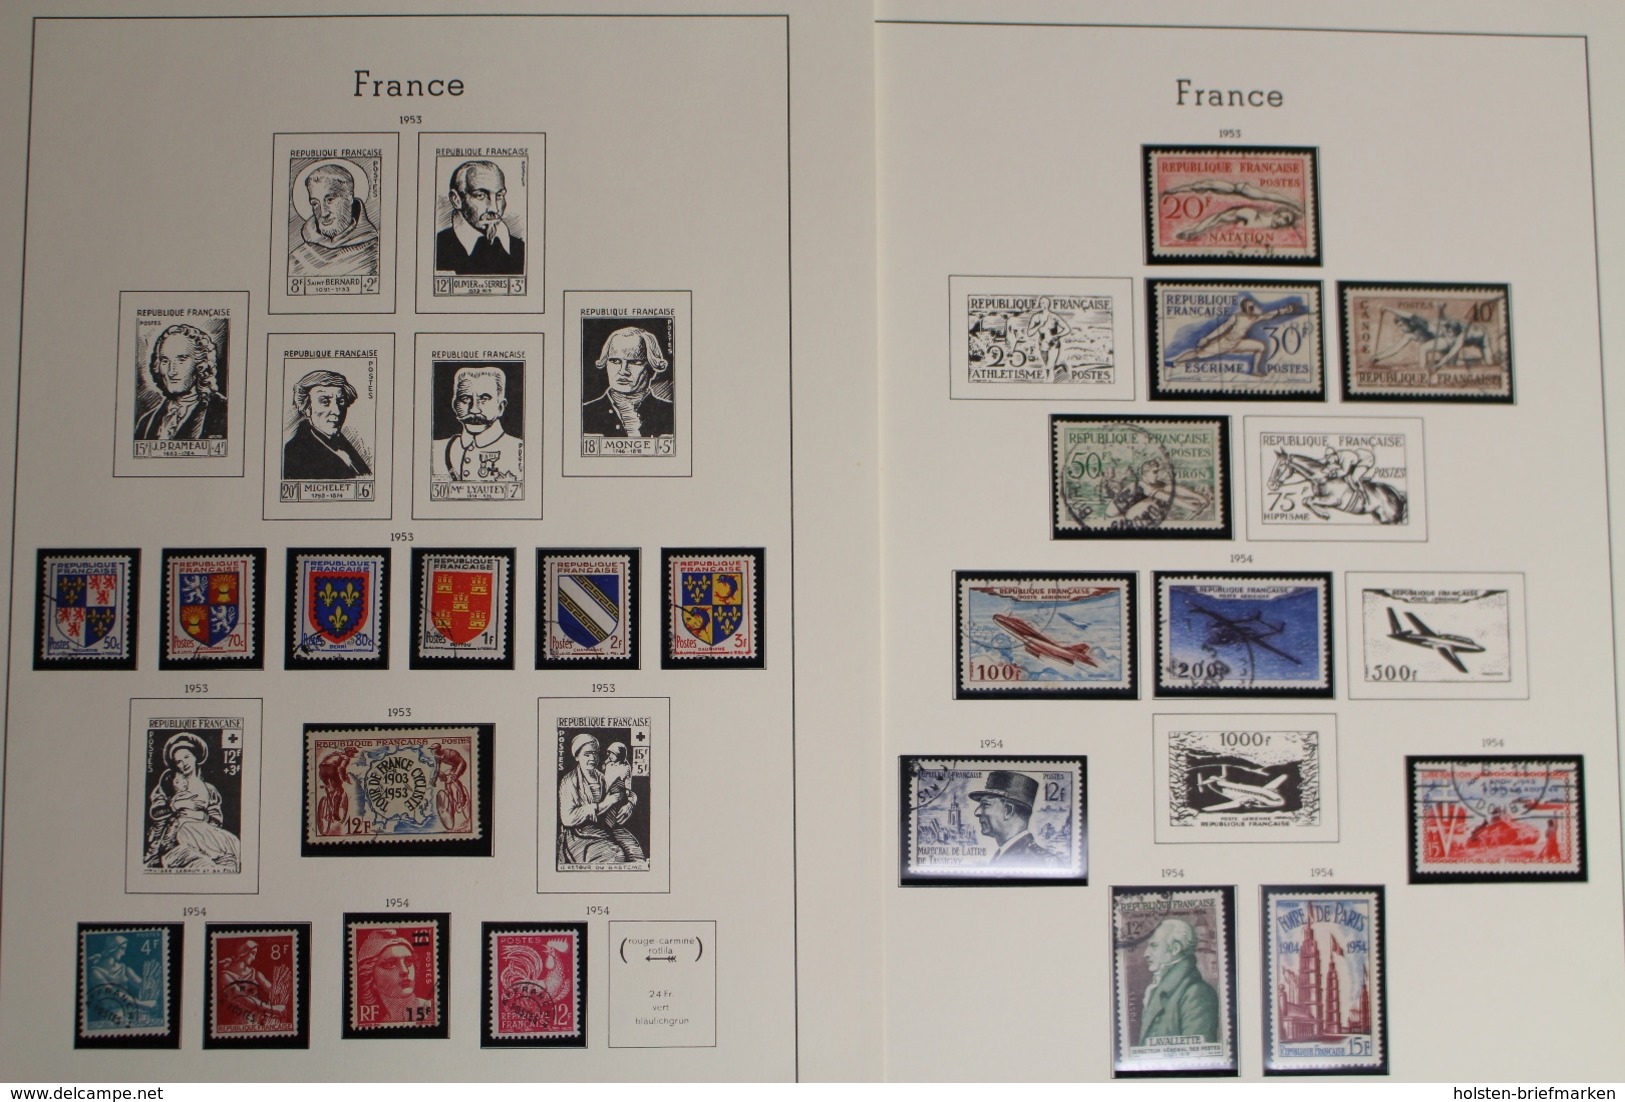 Frankreich 1945-1959 + 2 alte Briefe, gestempelte Sammlung